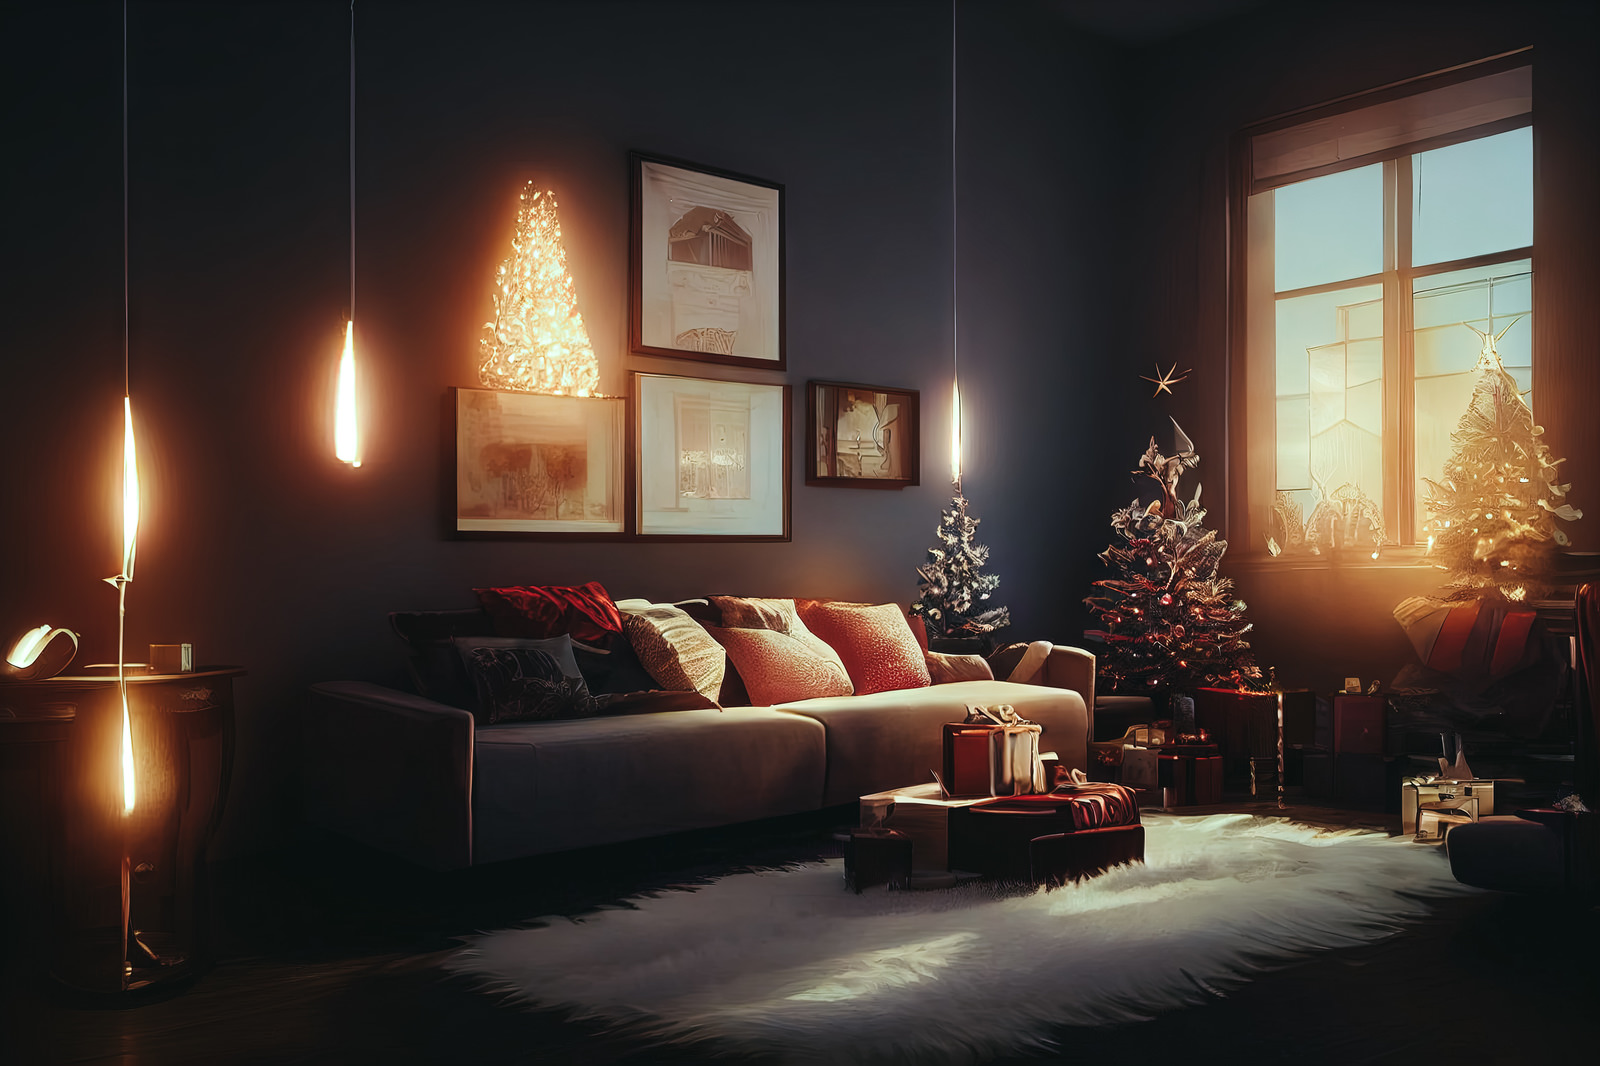 「キャンドルの明かりとクリスマスツリーのある広いリビング | フリー素材のぱくたそ」の写真